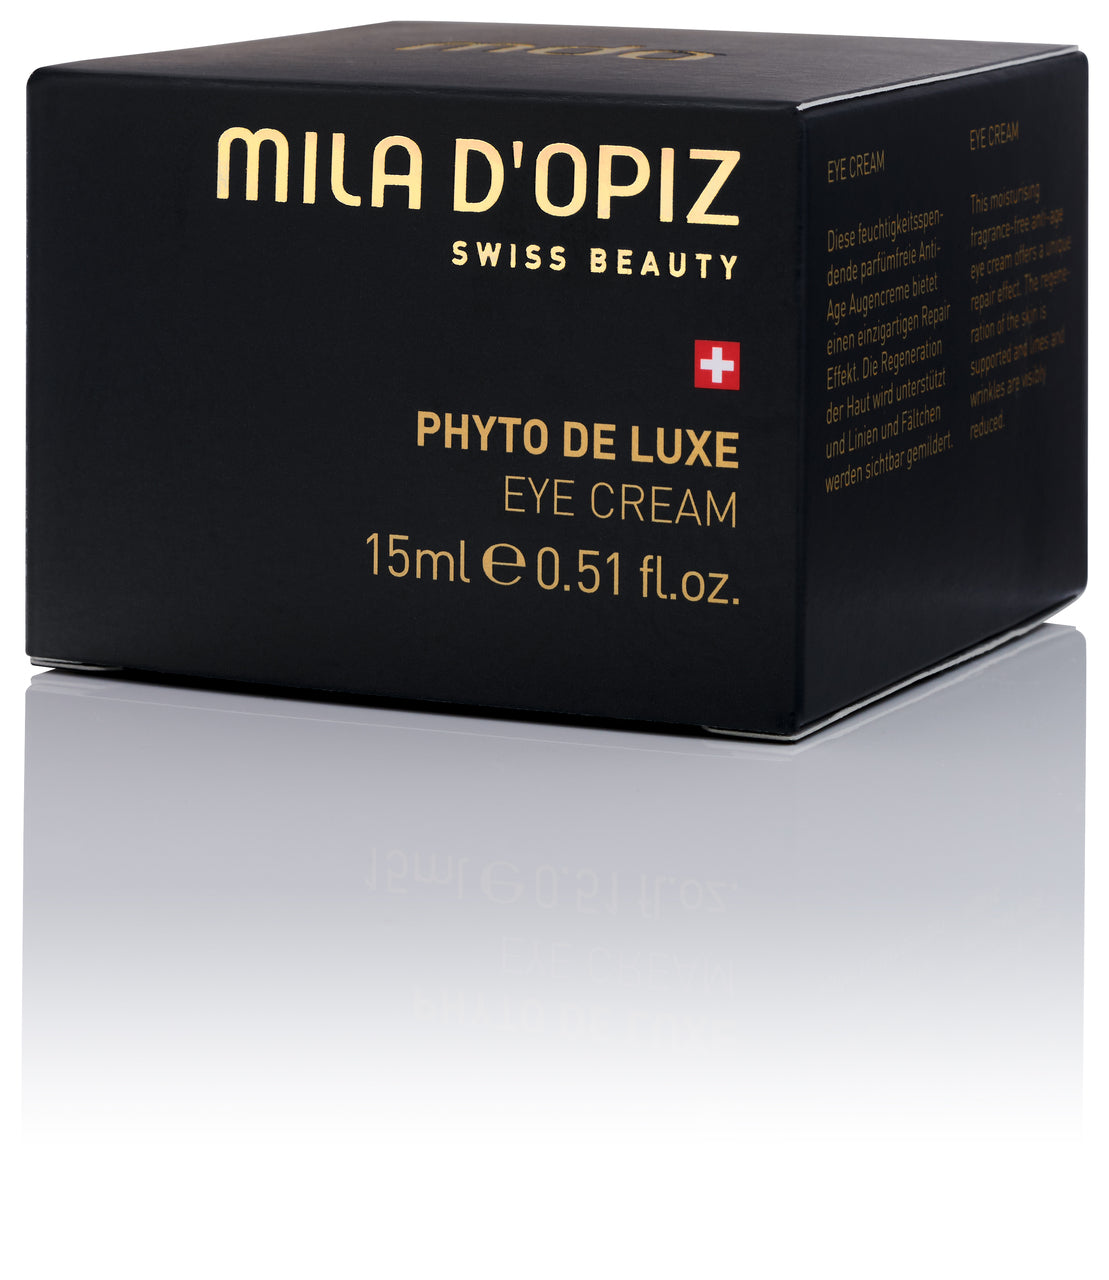 MILA D'OPIZ PHYTO DE LUXE Eye Cream 15ml